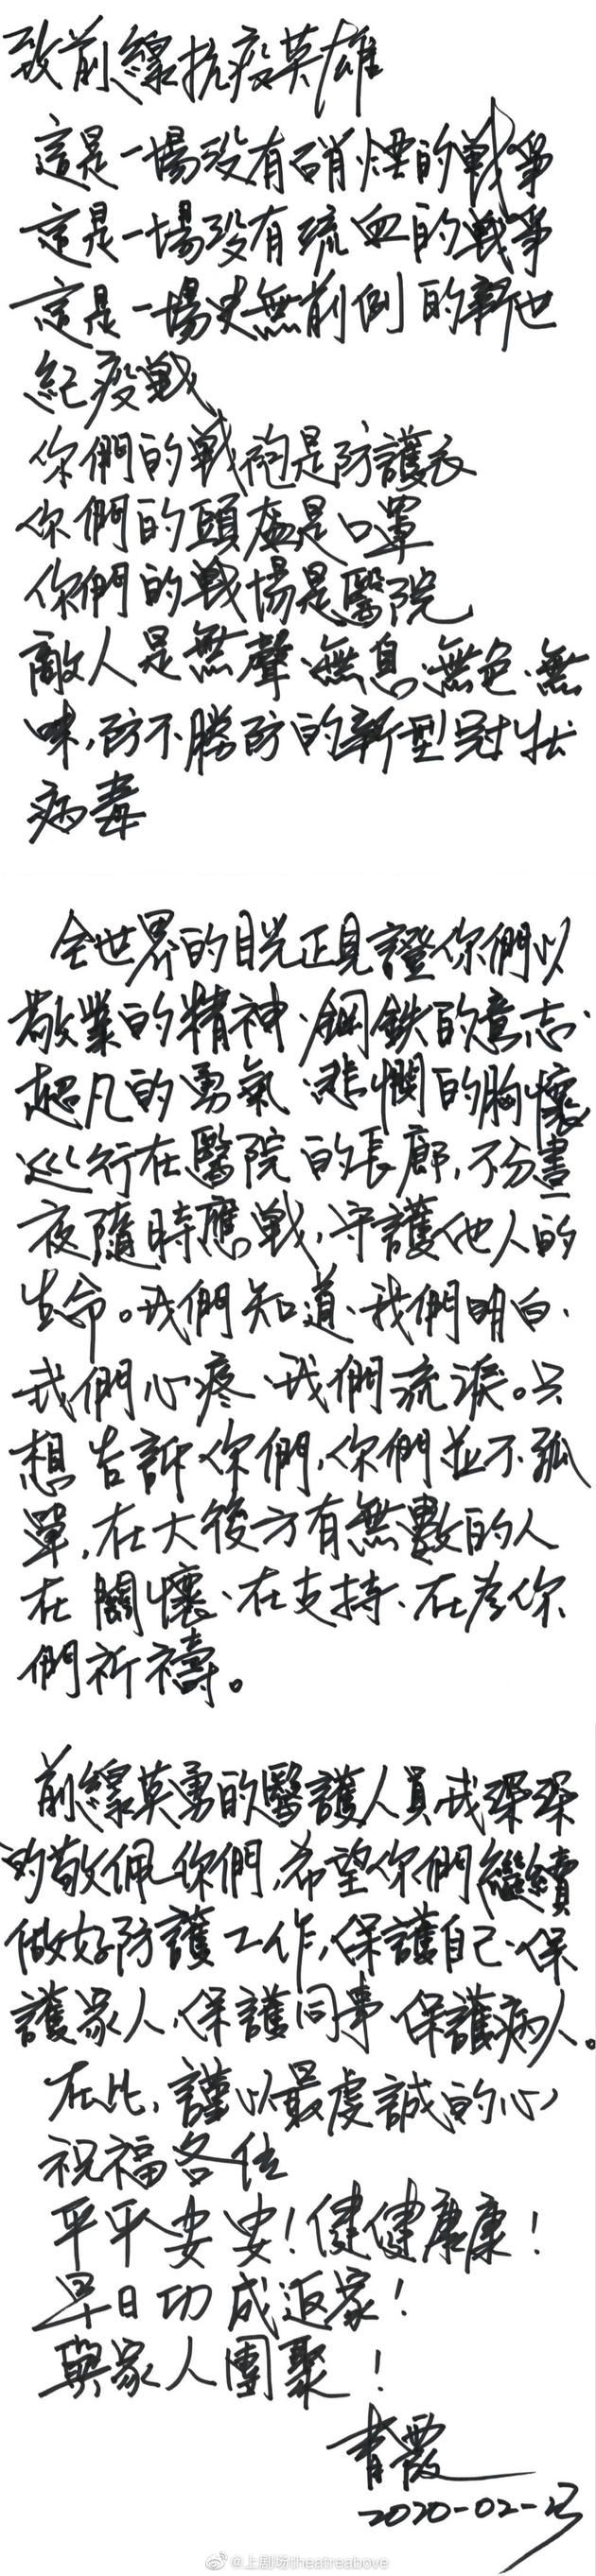 林青霞致《前线抗役英雄的一封信》